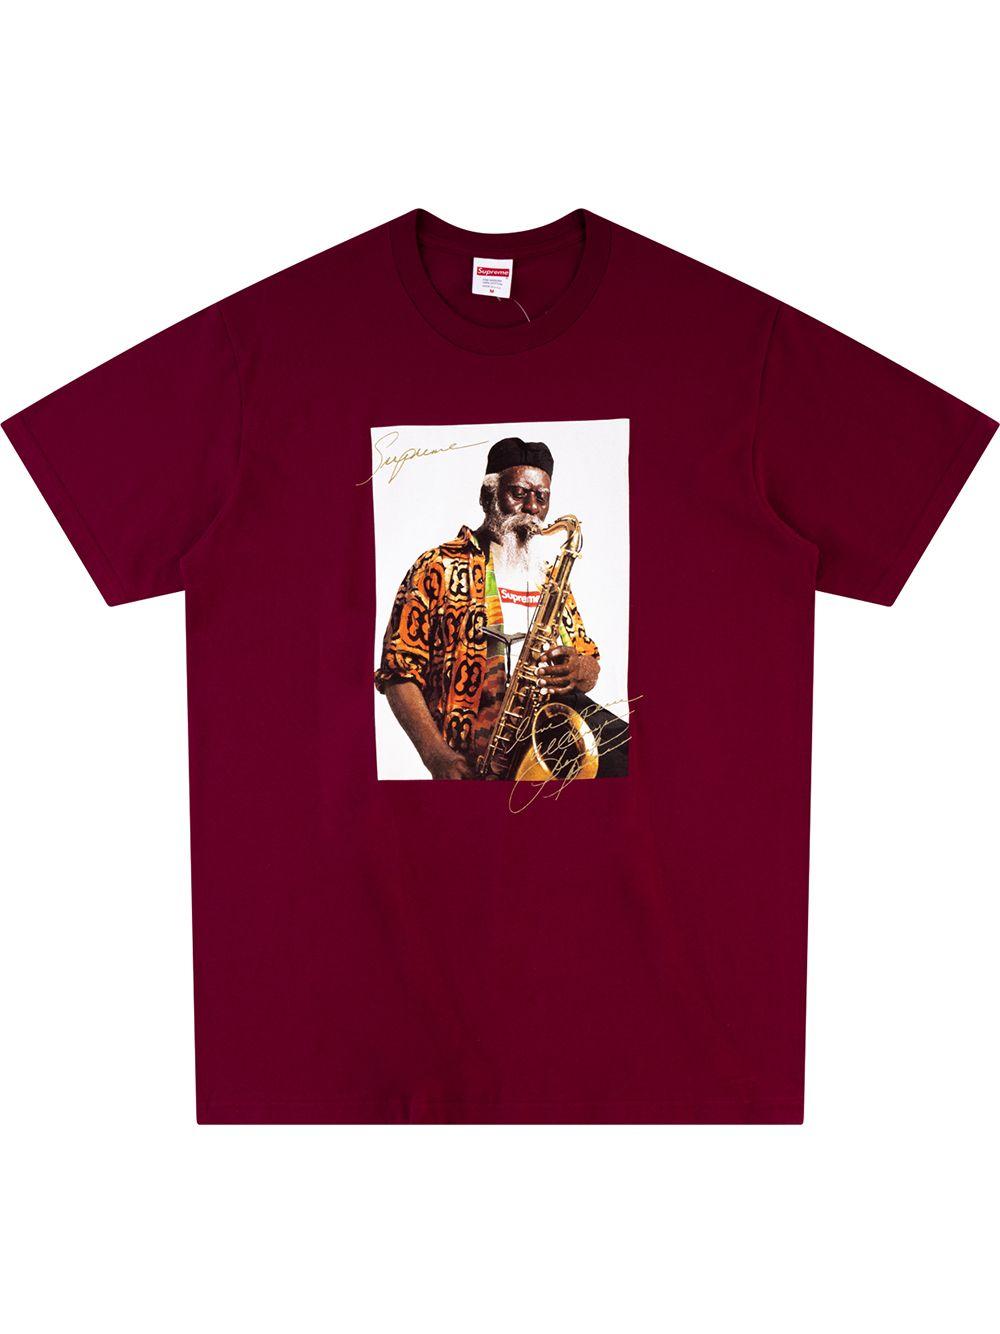 Supreme Cotton Pharoah Sanders T-shirt in Red for Men - Lyst